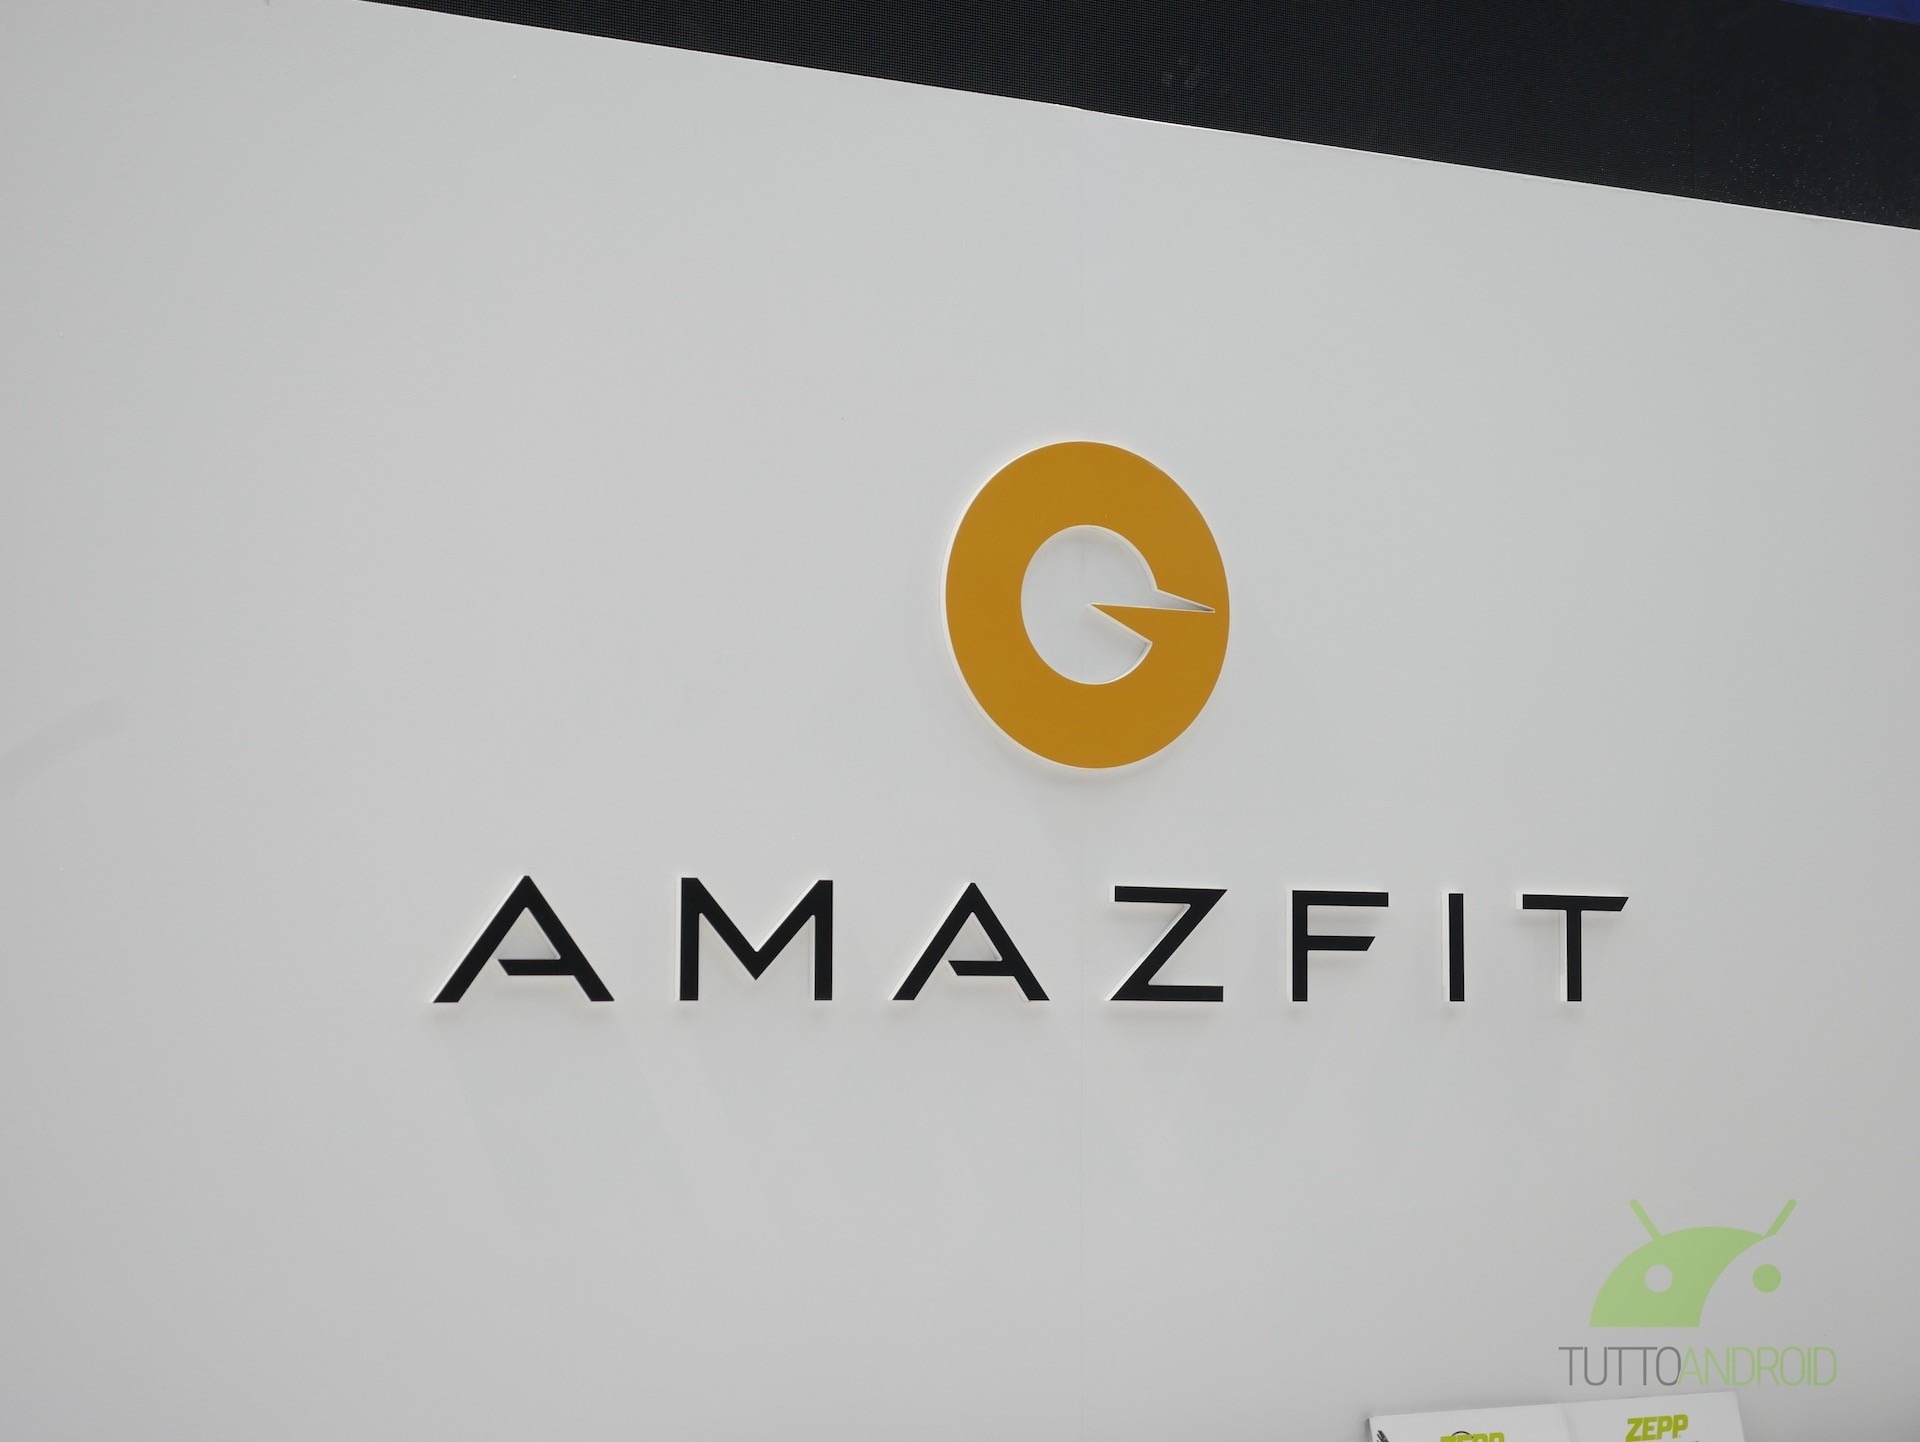 Amazfit app ganha novo nome e logo na Play Store, passando a se chamar Zepp